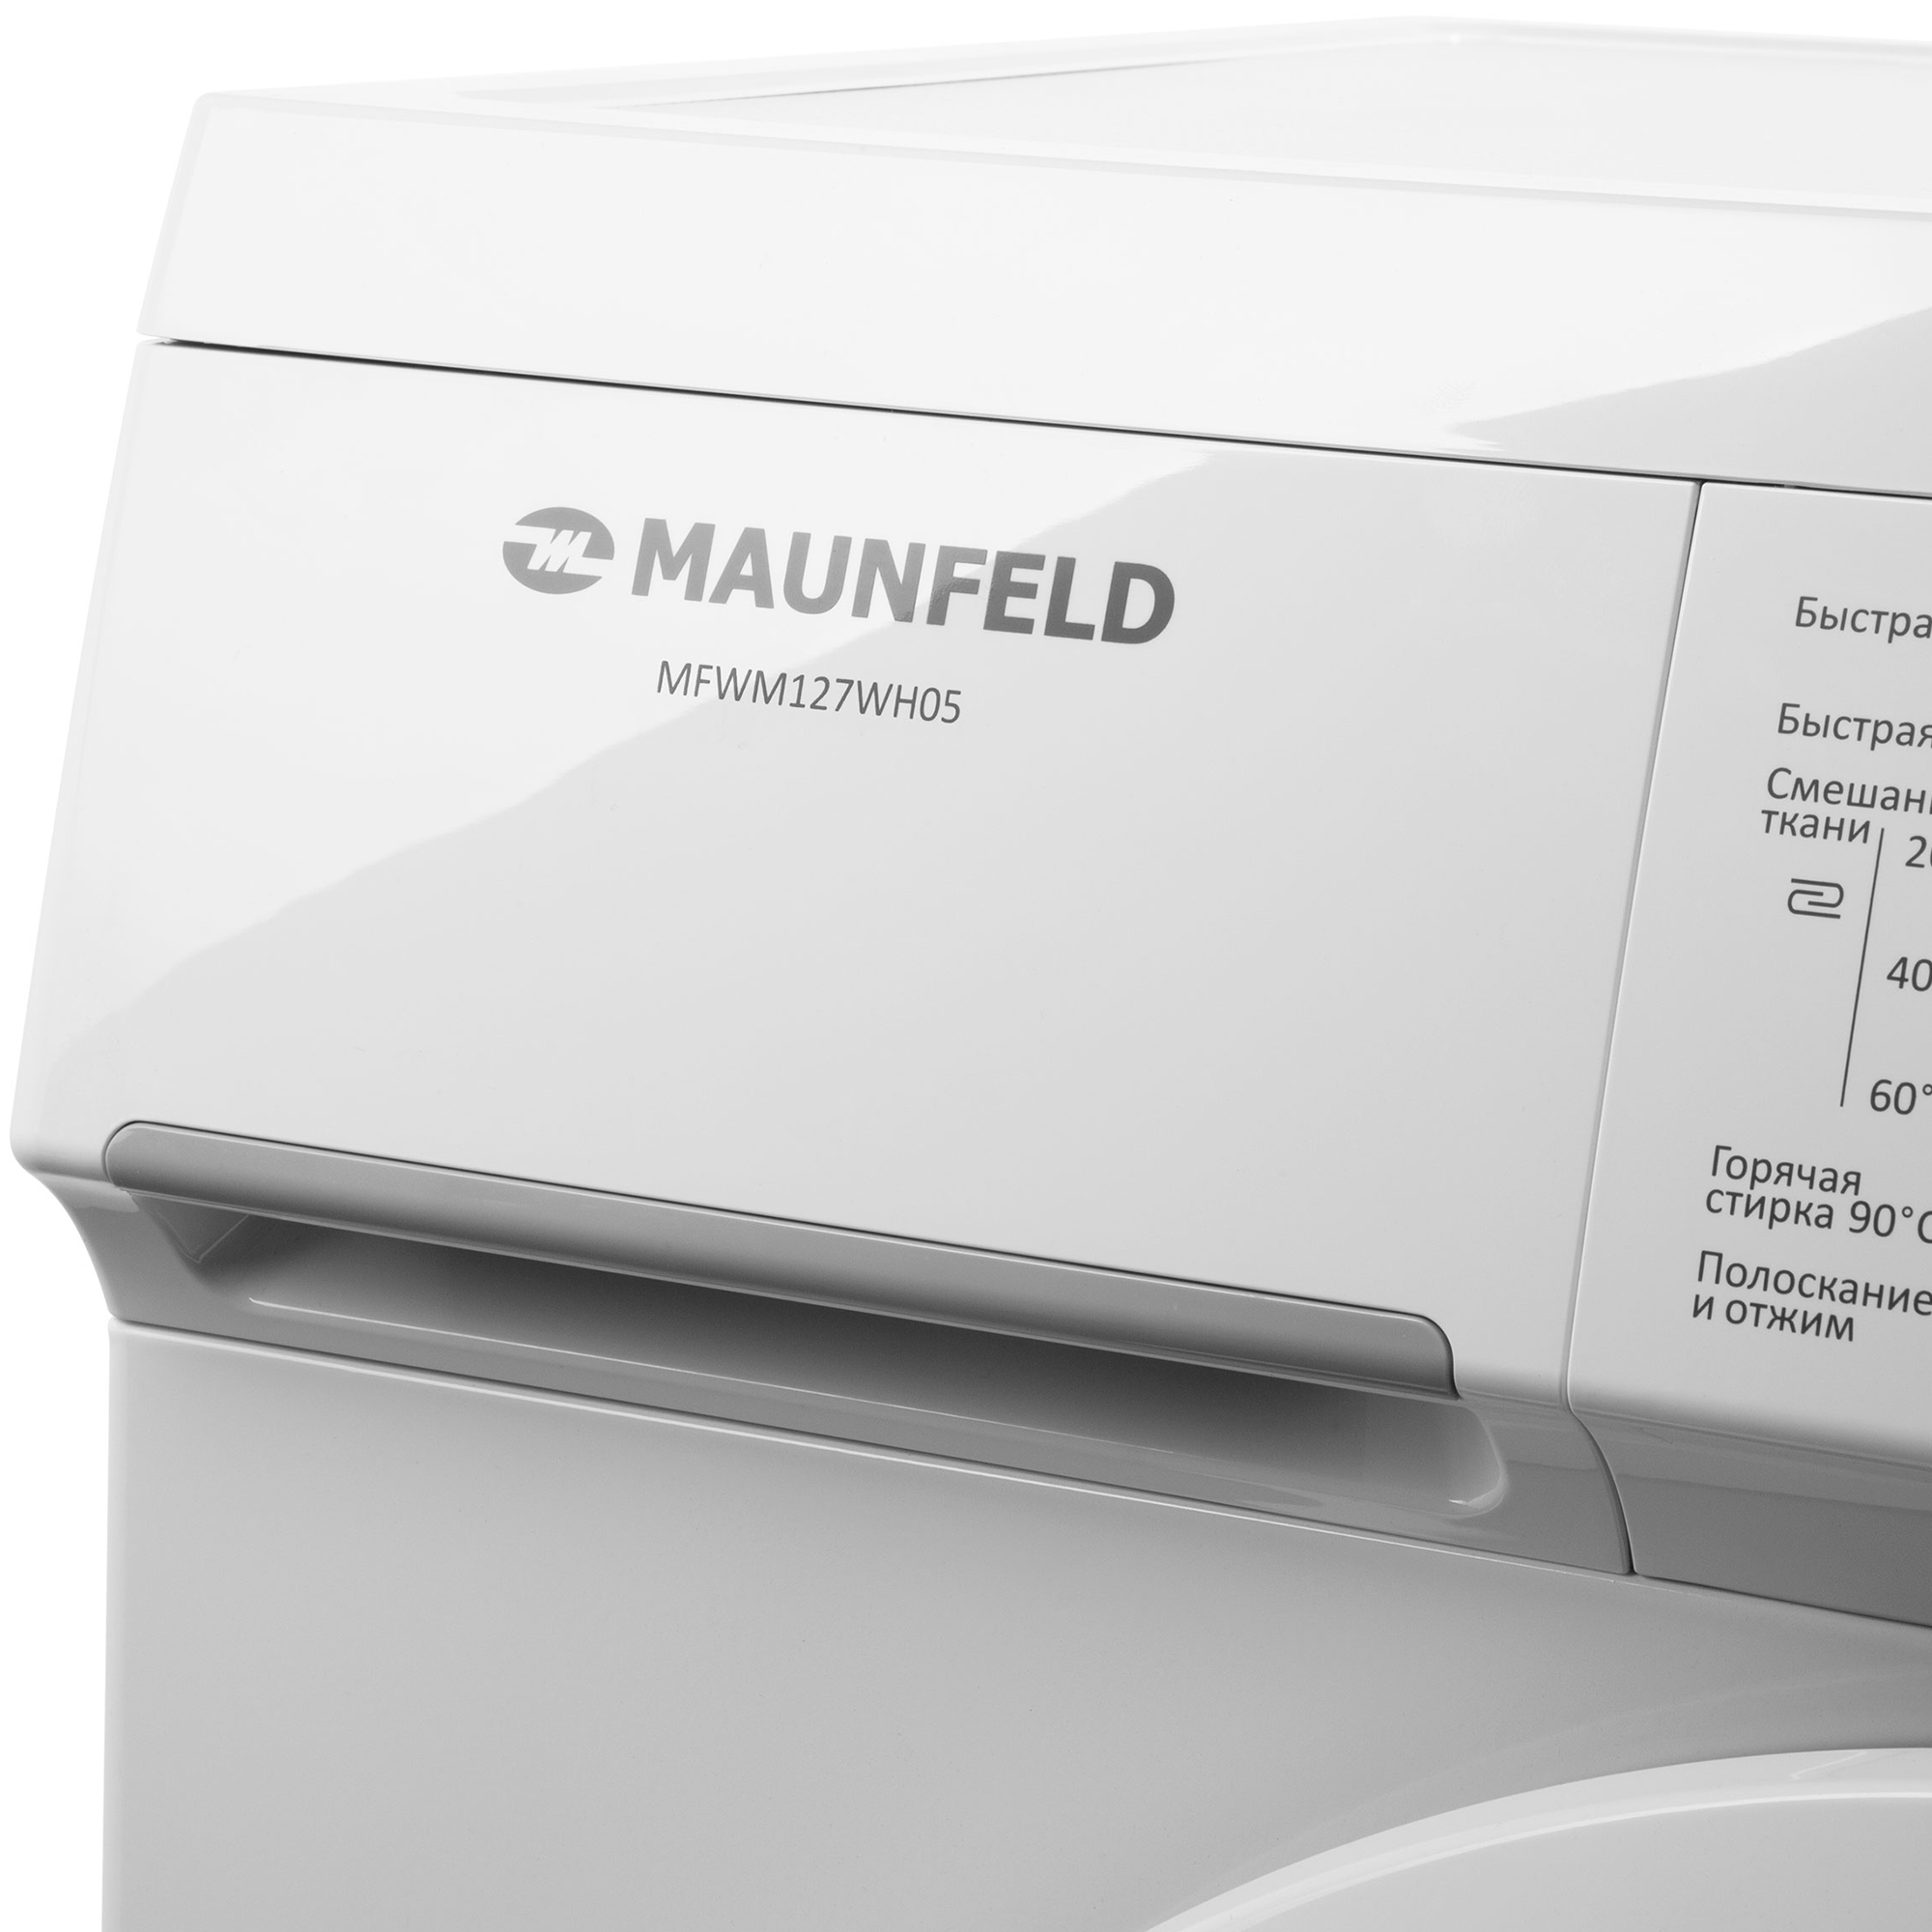 Стиральная машина Maunfeld MFWM127WH05, цвет белый - фото 7